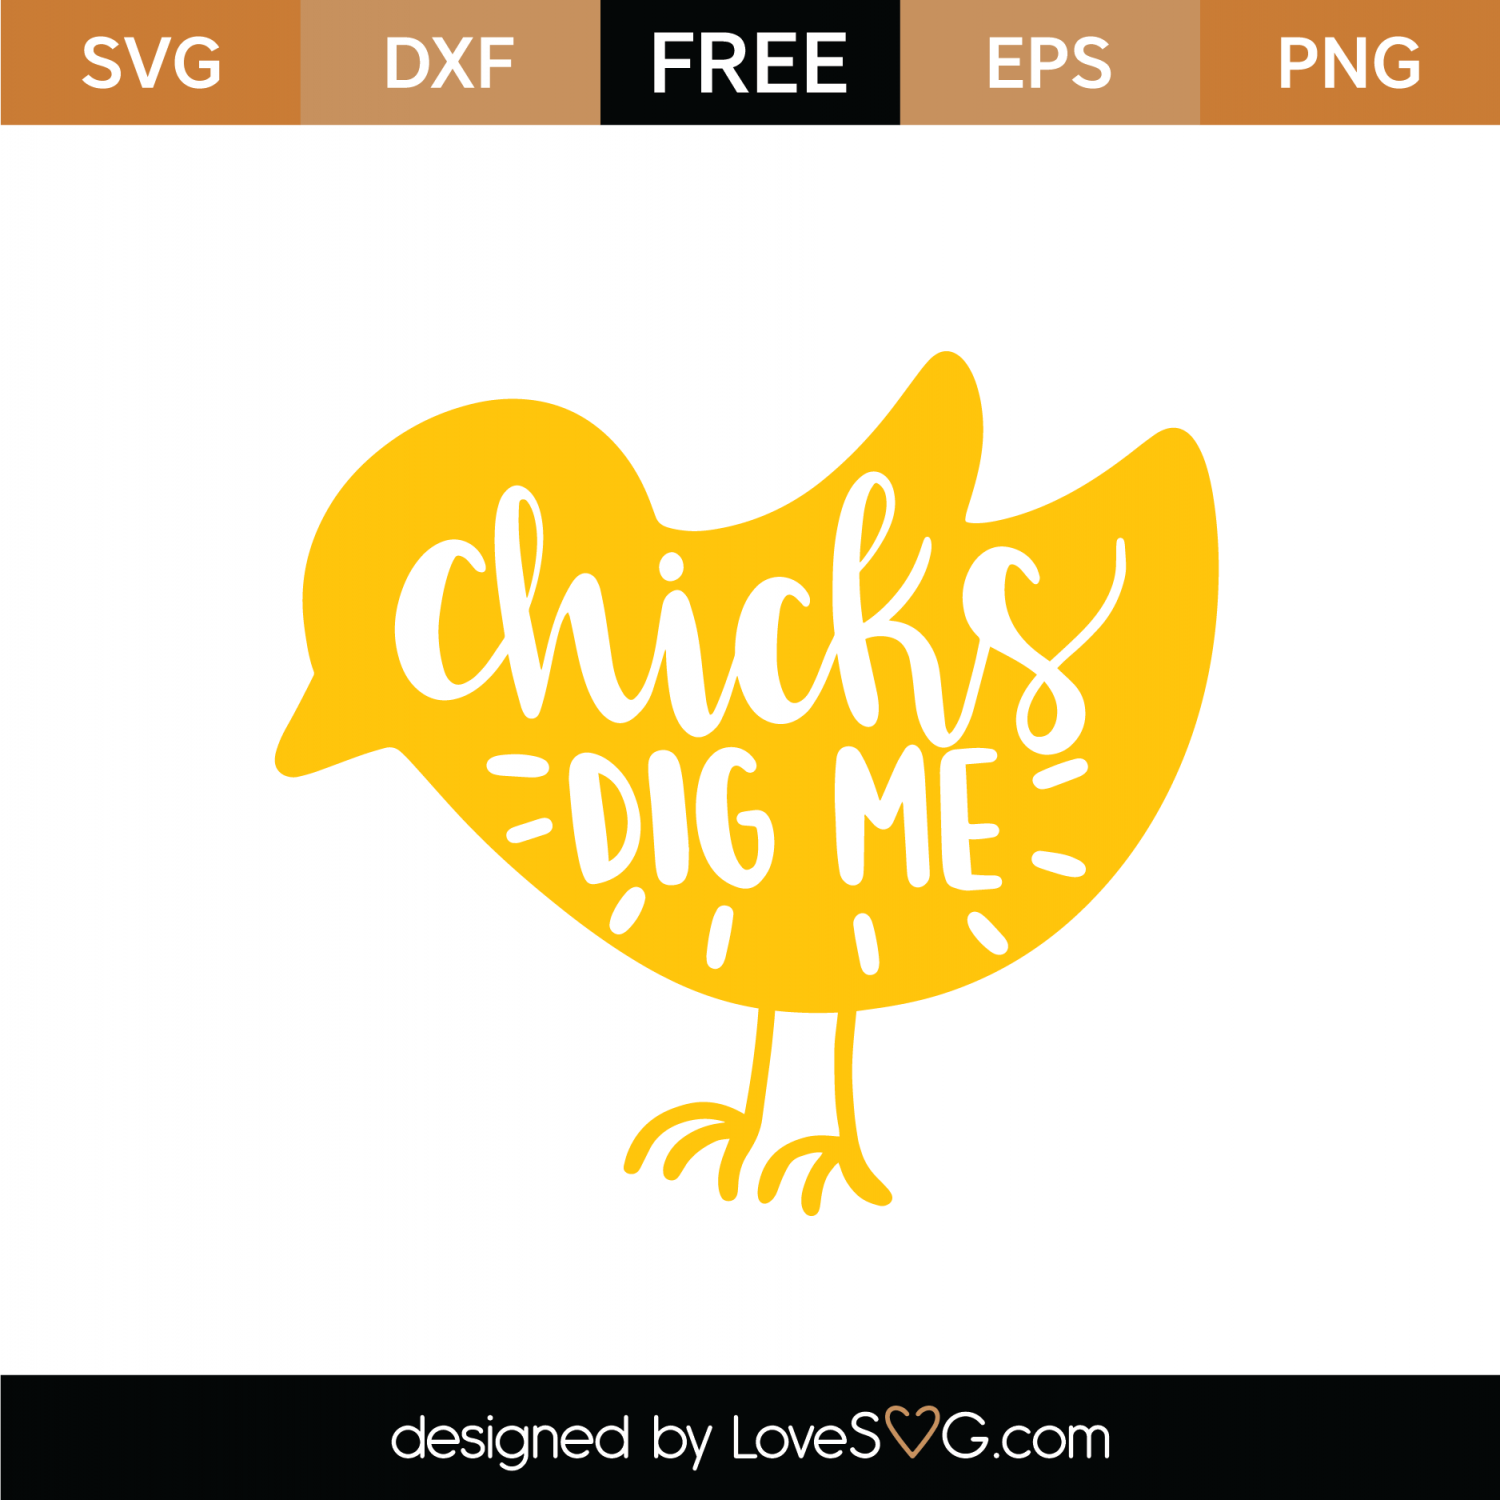 Download Free Chicks Dig Me SVG Cut File | Lovesvg.com